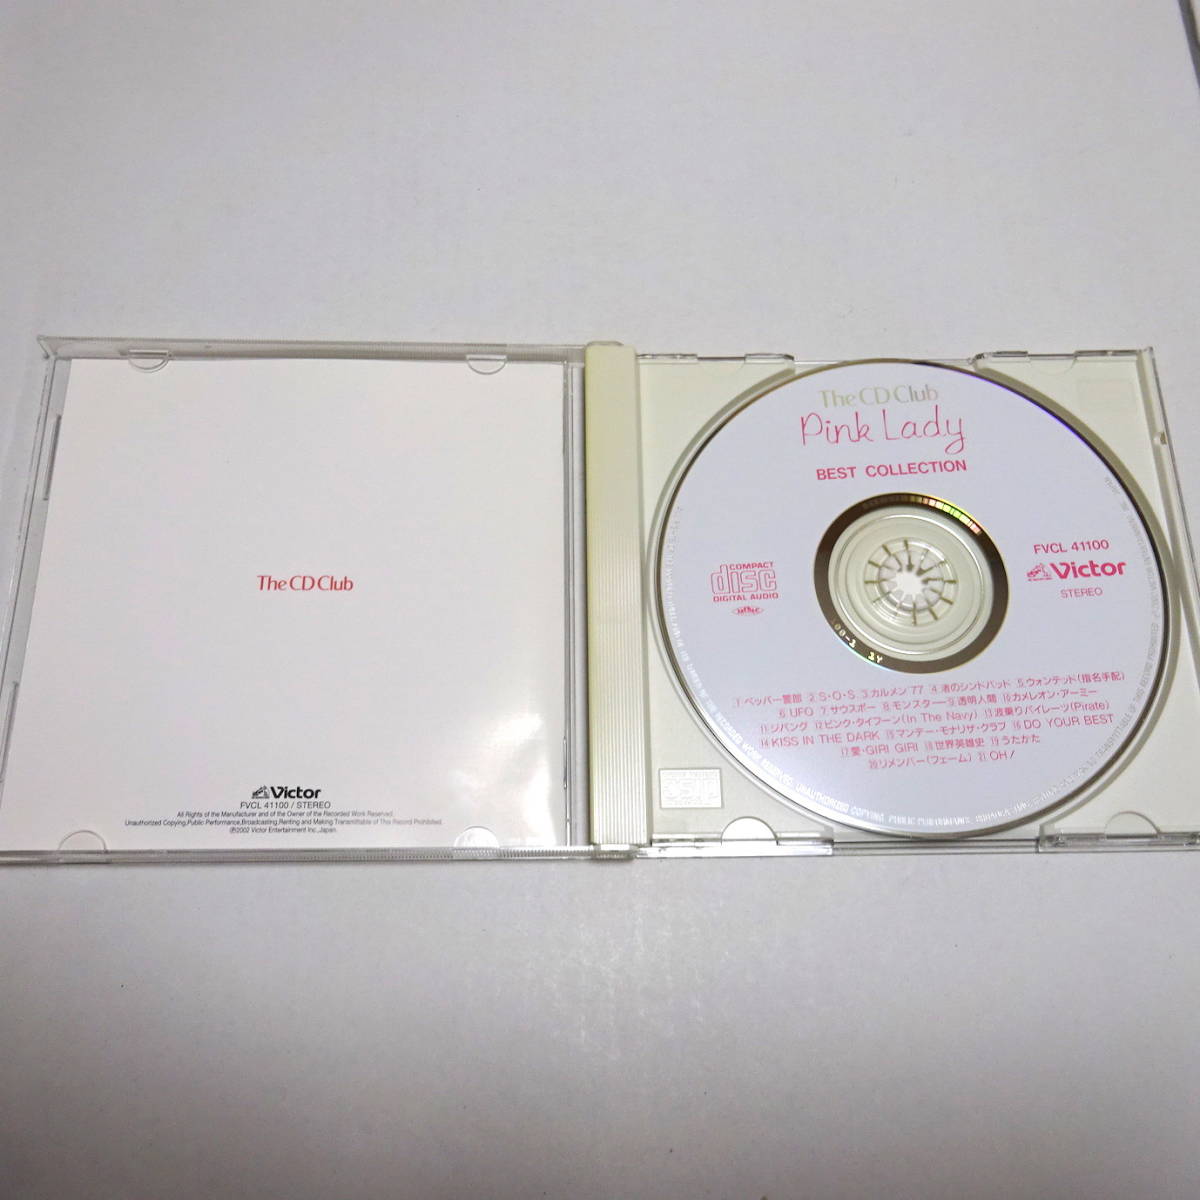 The CD Club盤「ピンク・レディー・ベスト・コレクション」全21曲/ペッパー警部/S.O.S/渚のシンドバッド/ウォンテッド/UFO/サウスポー 他の画像3